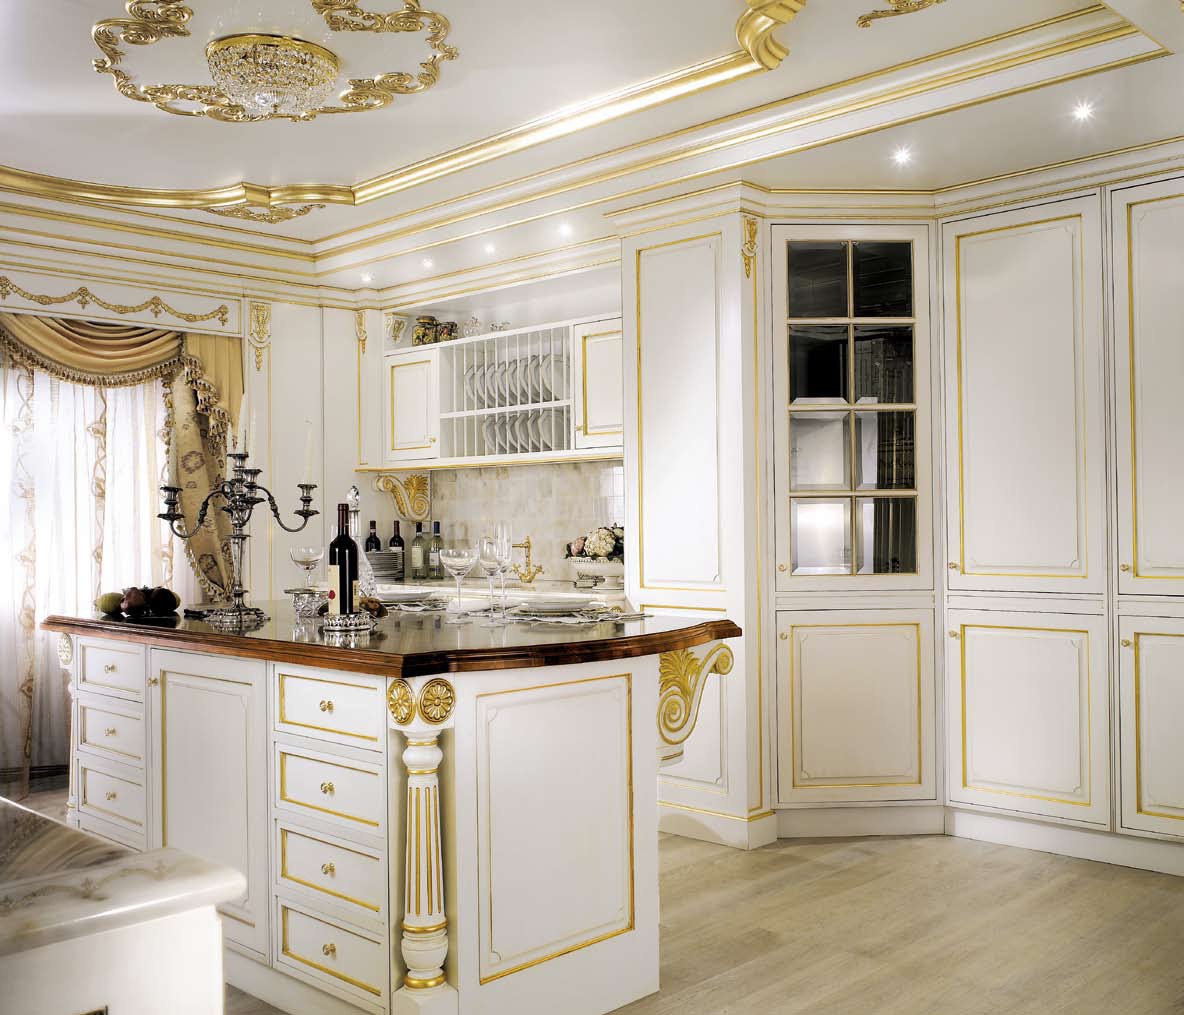 Кухня в классическом стиле, дизайн Castello, модель Buckingham.